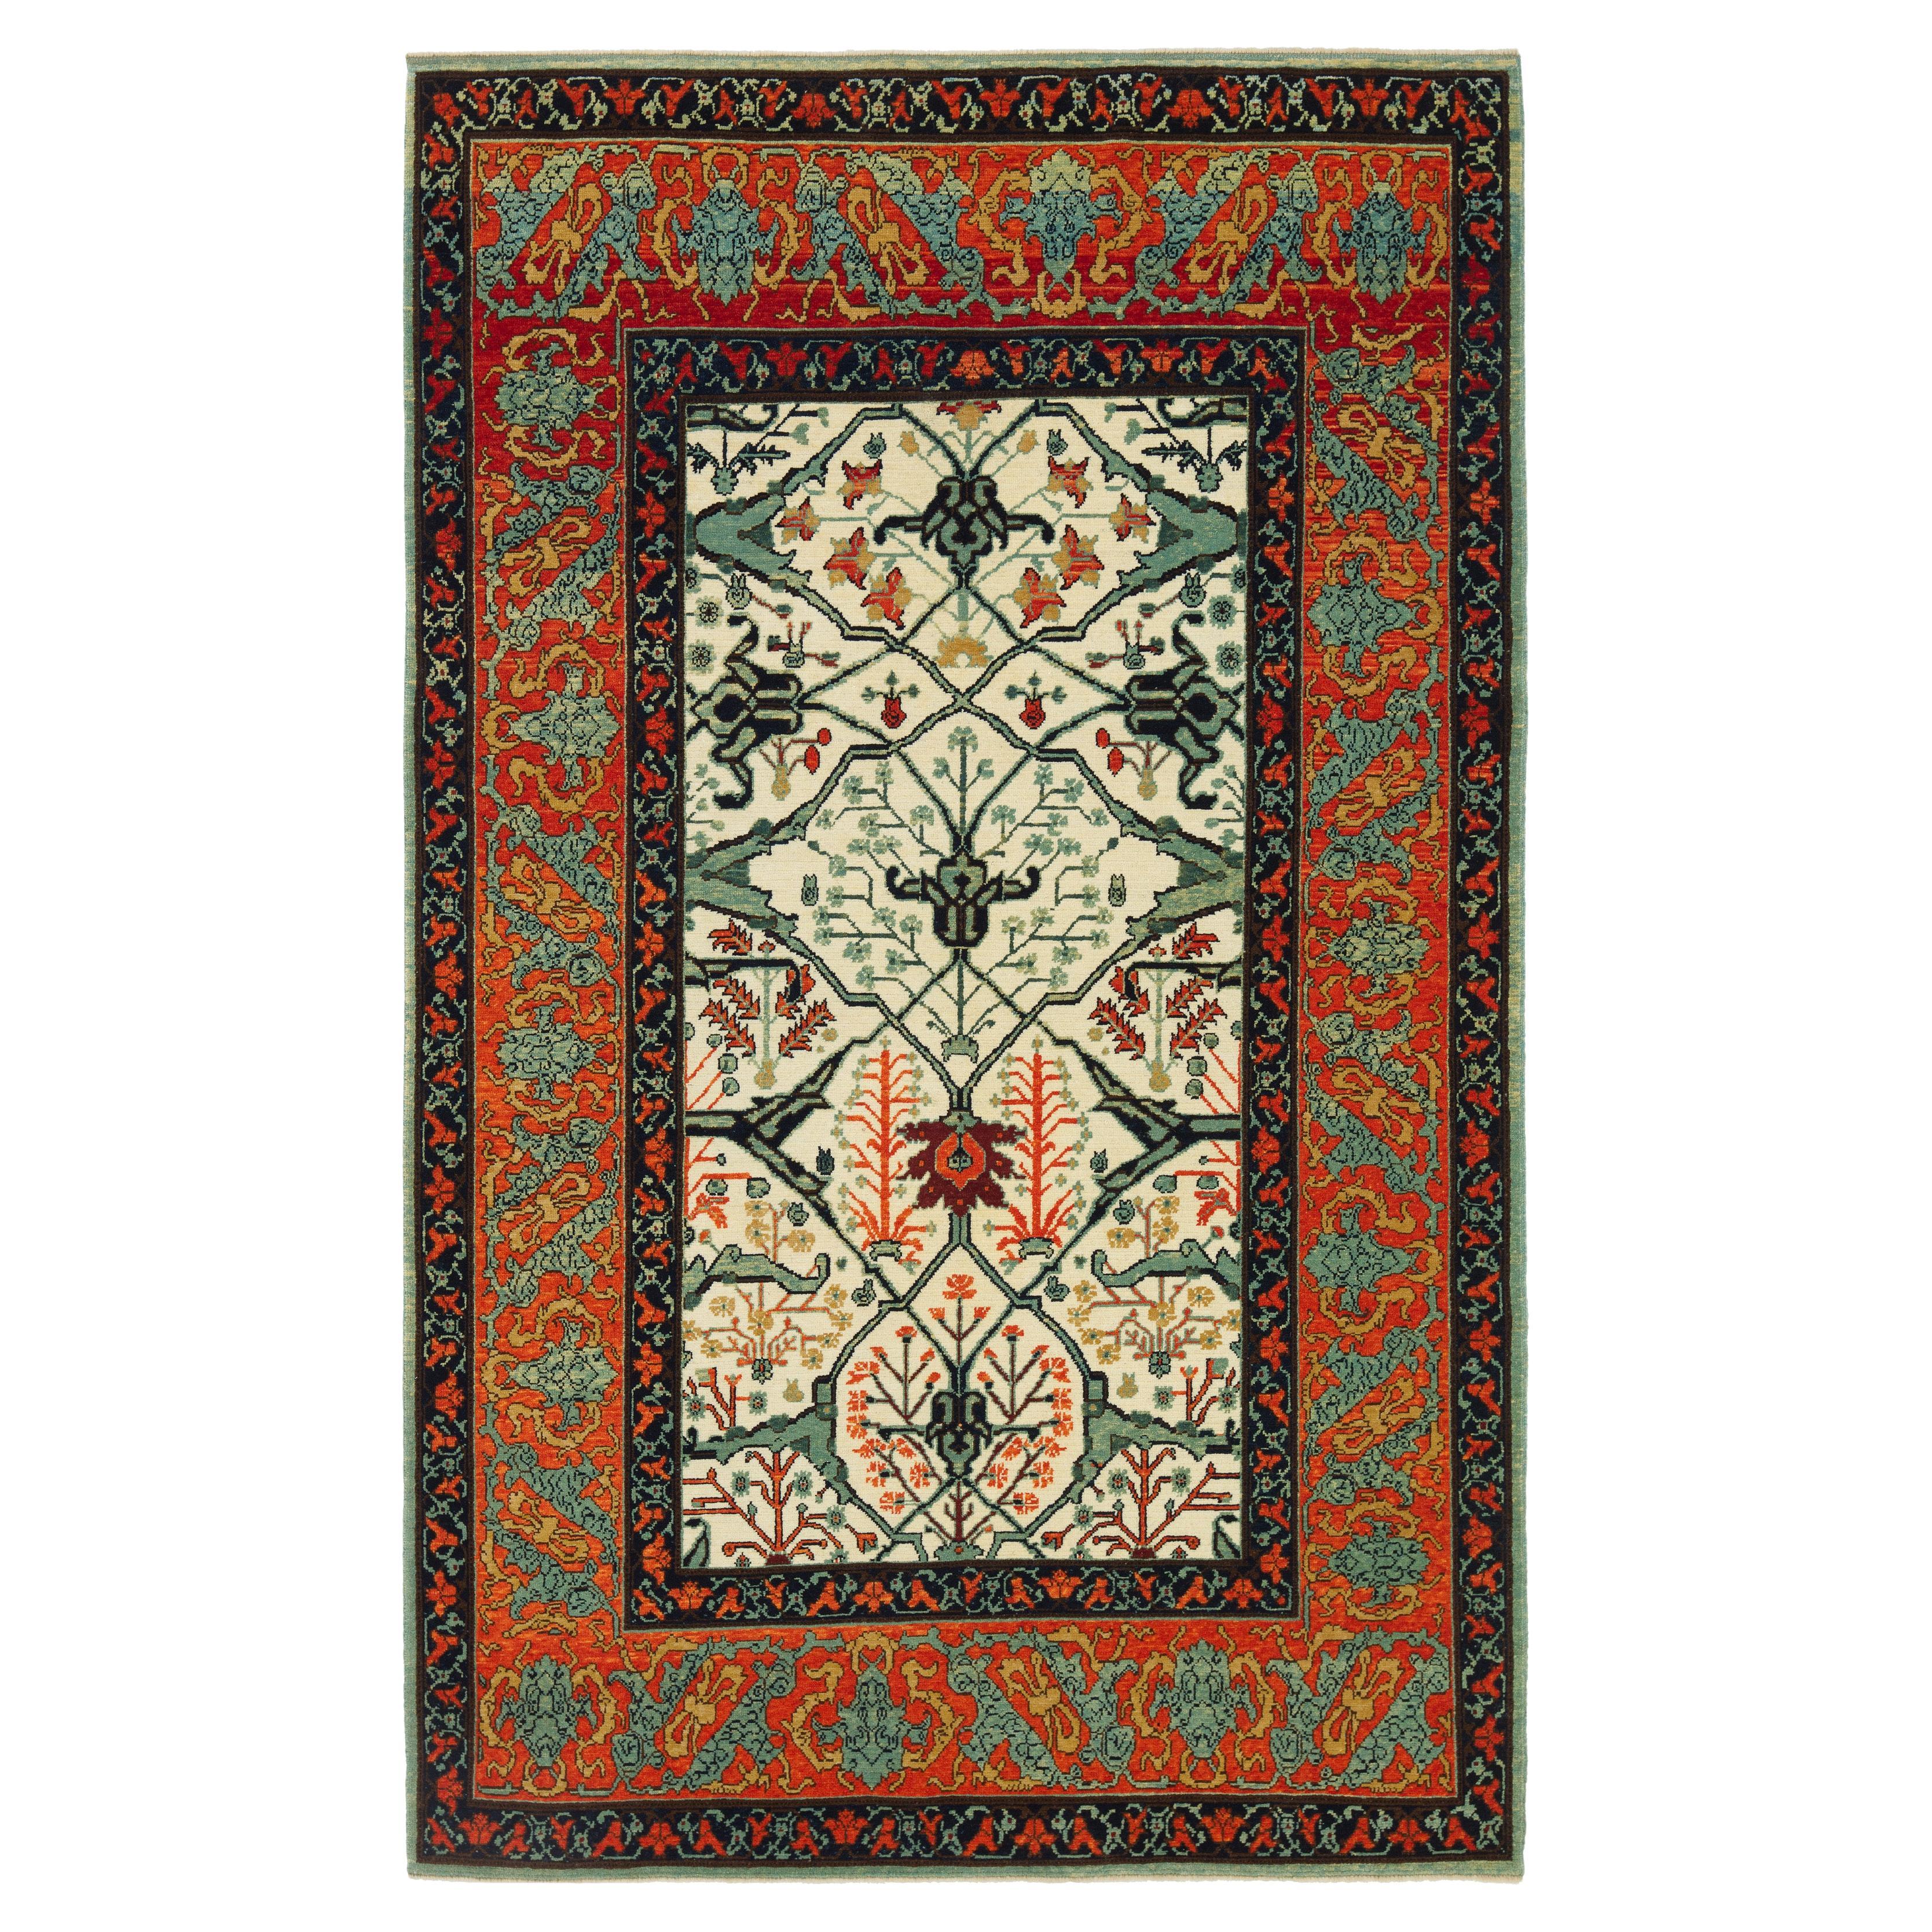 Ararat-Teppich Gerous Arabesque, antiker Teppich im persischen Revival-Stil, natürlich gefärbt